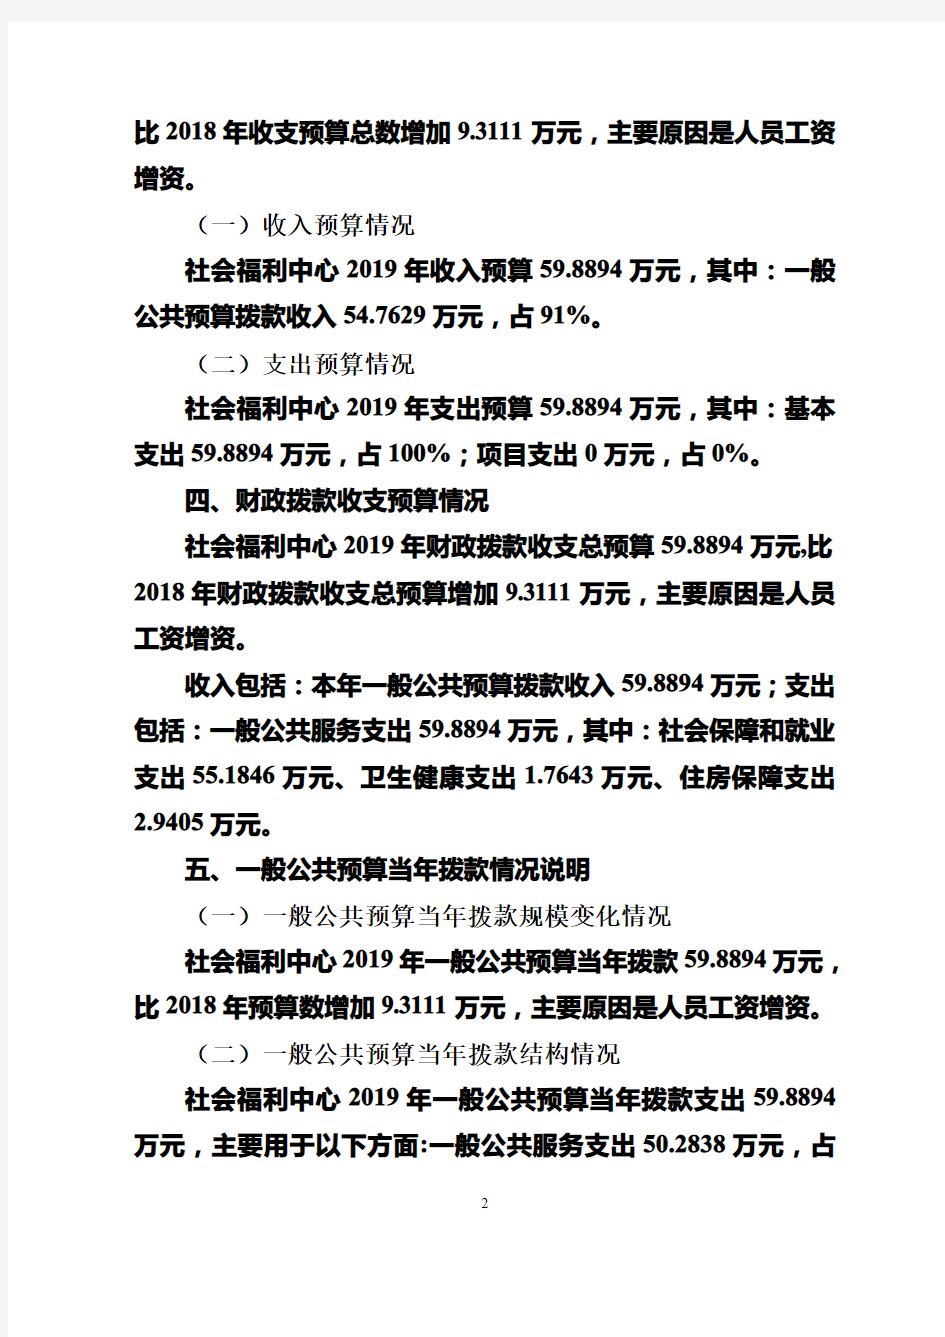 仪陇县社会福利中心2019年部门预算编制说明